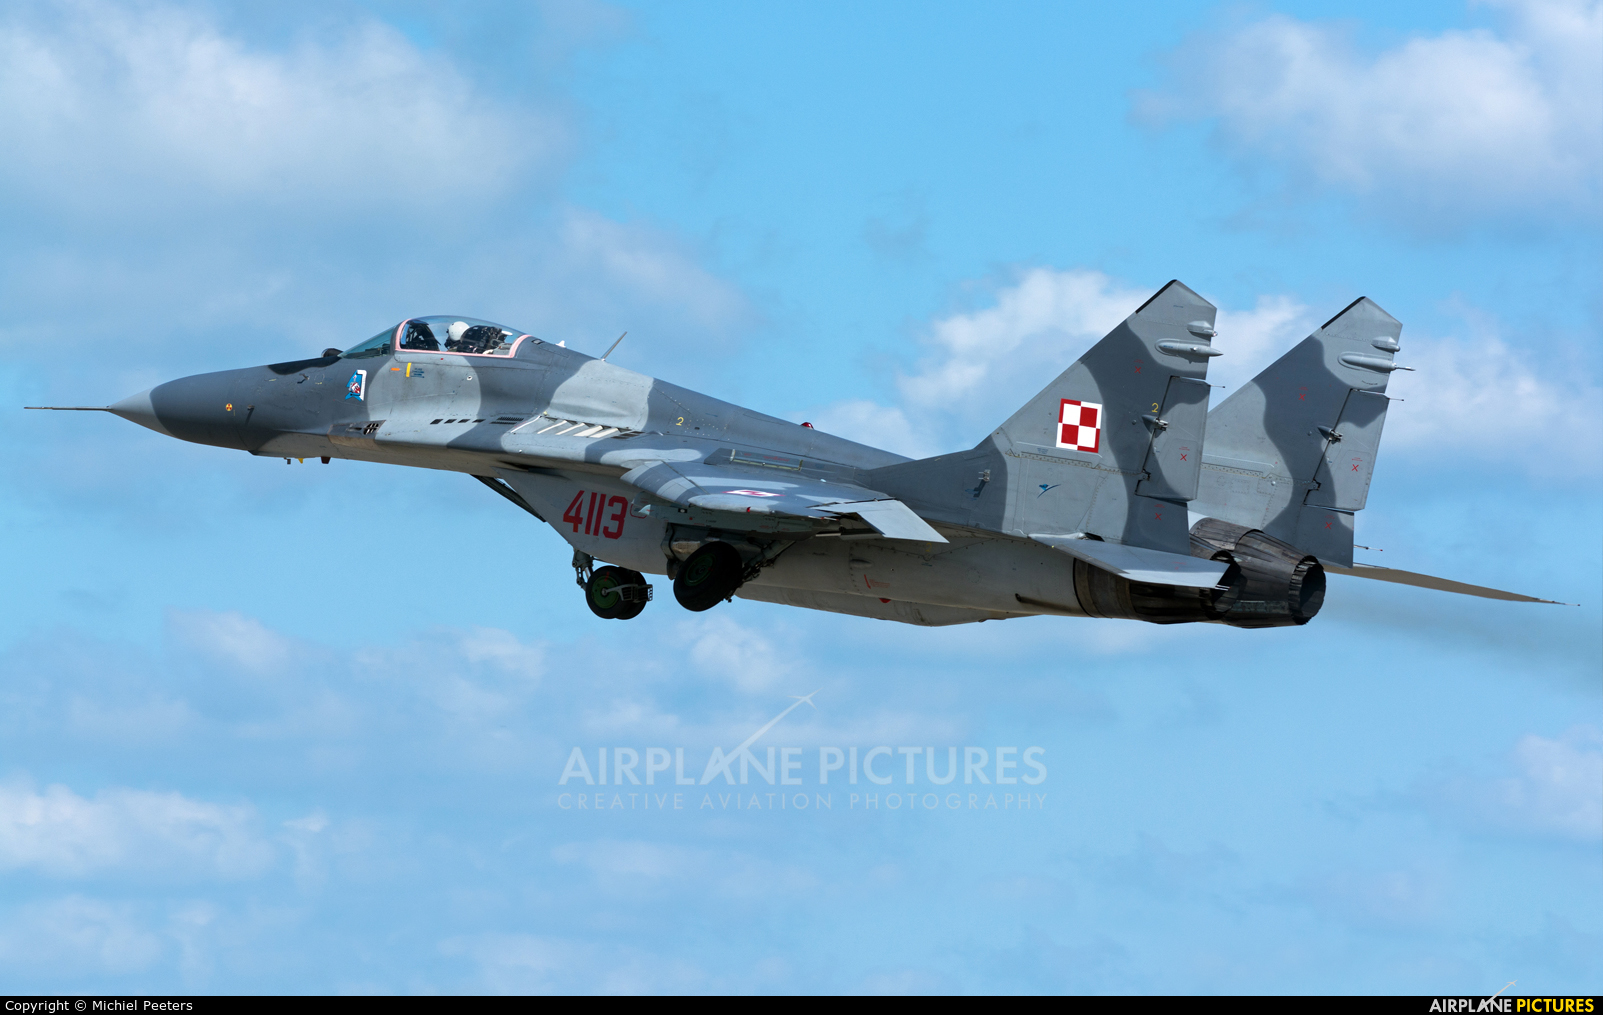 Poland - Air Force 4113 aircraft at Malbork